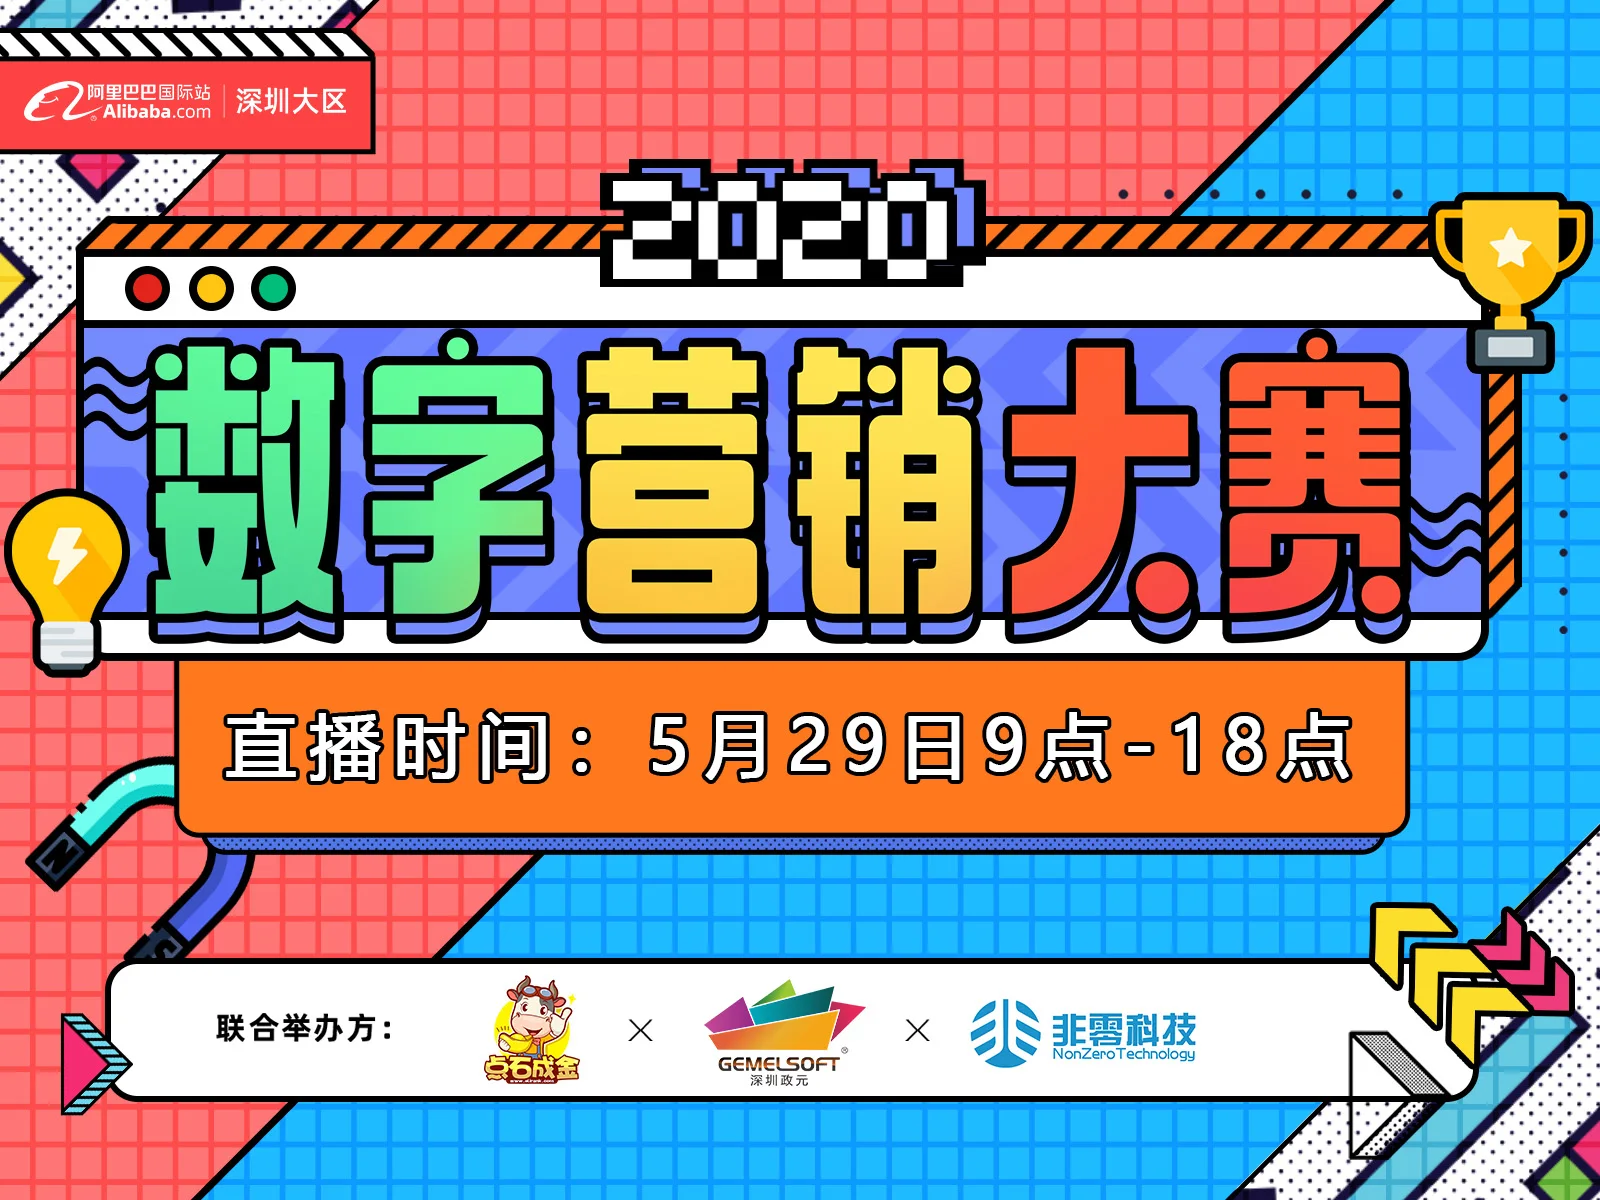 【2020数字营销大赛】深圳大区 莞城莞东区域决赛